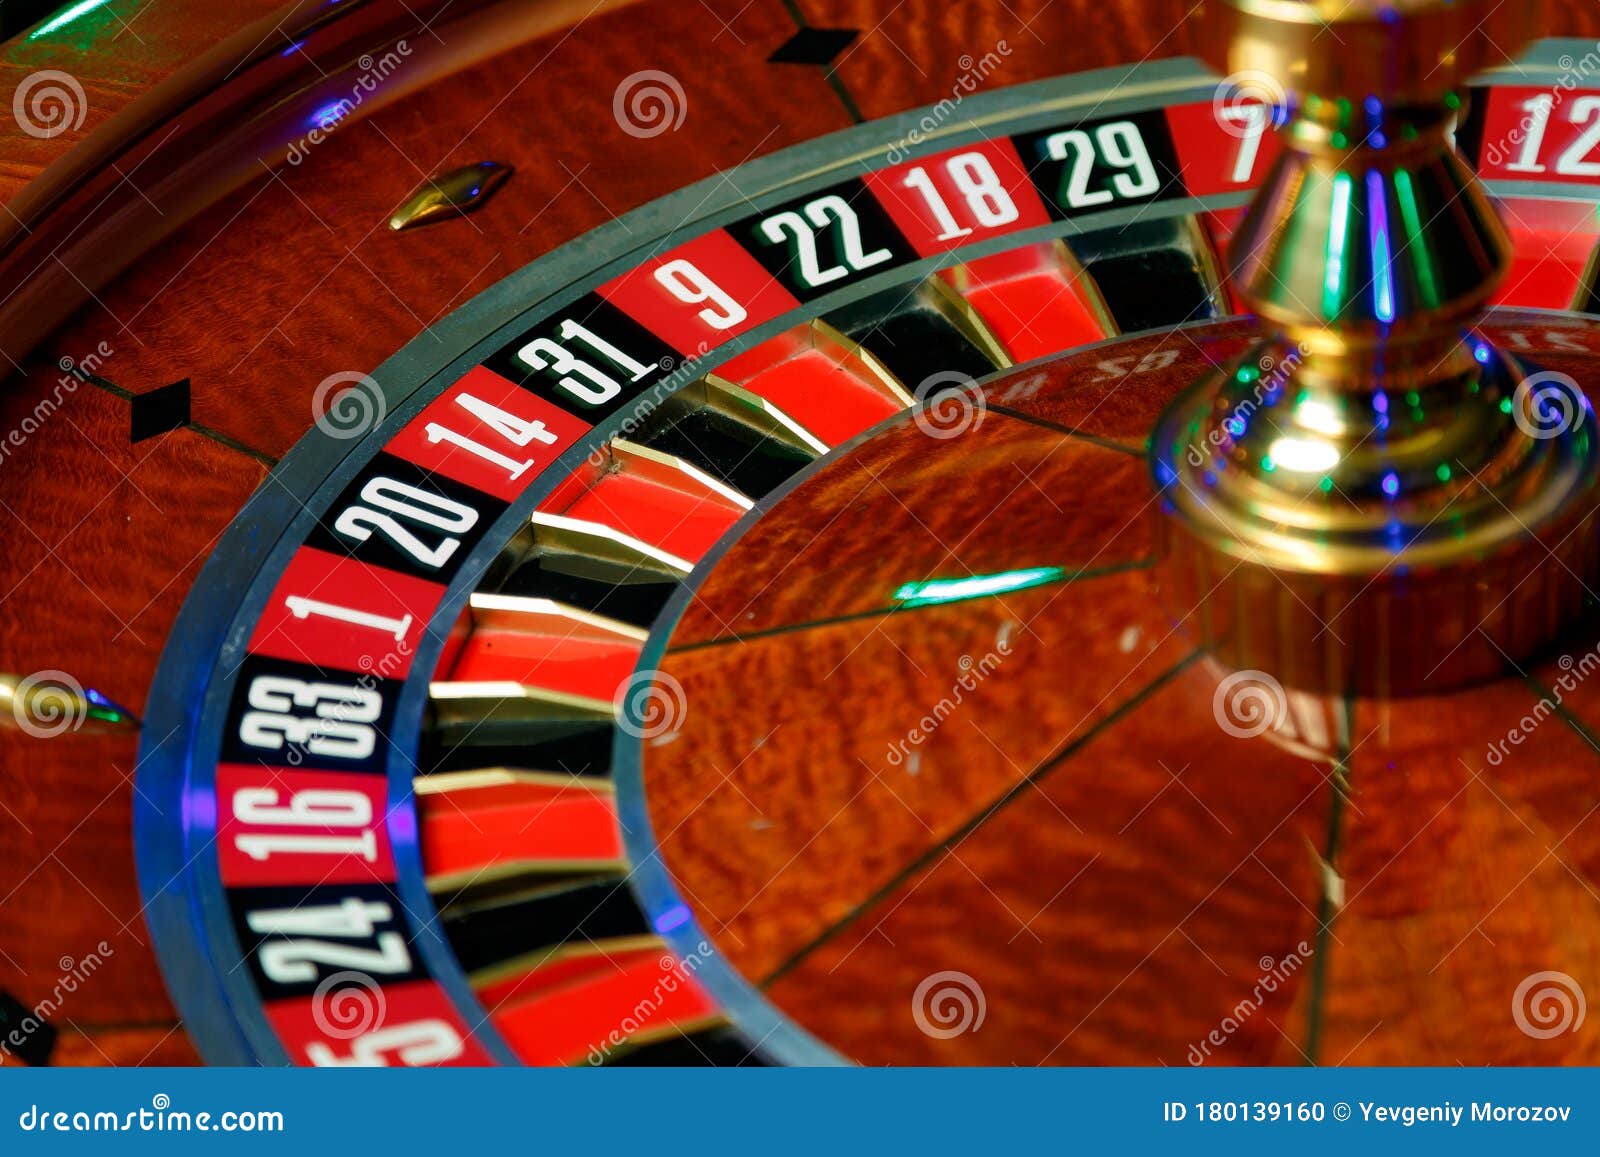 Bumbet poker casino 17556